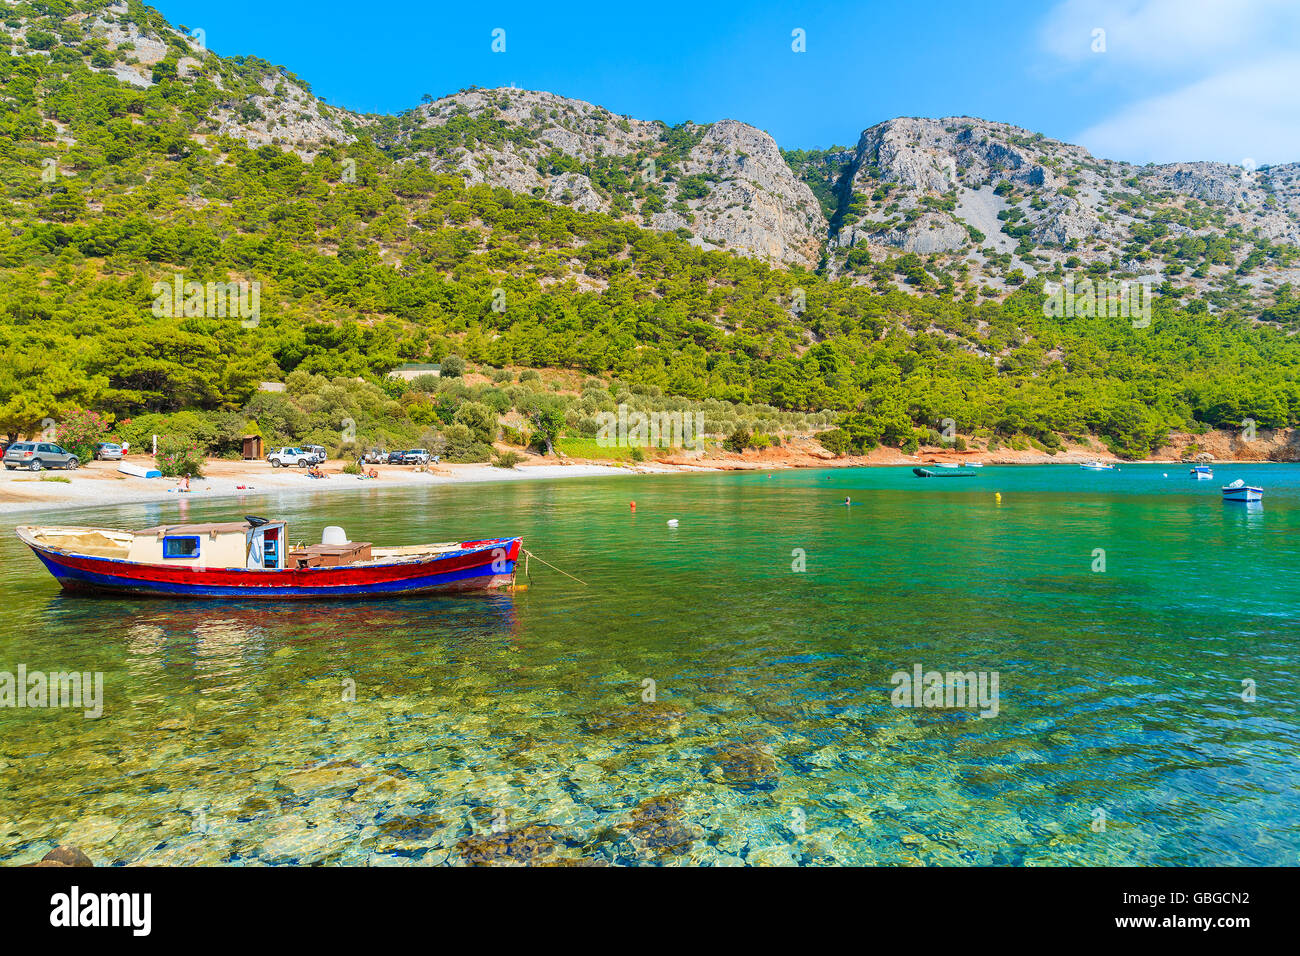 Bateau de pêche en baie magnifique avec des montagnes en arrière-plan, l'île de Samos, Grèce Banque D'Images